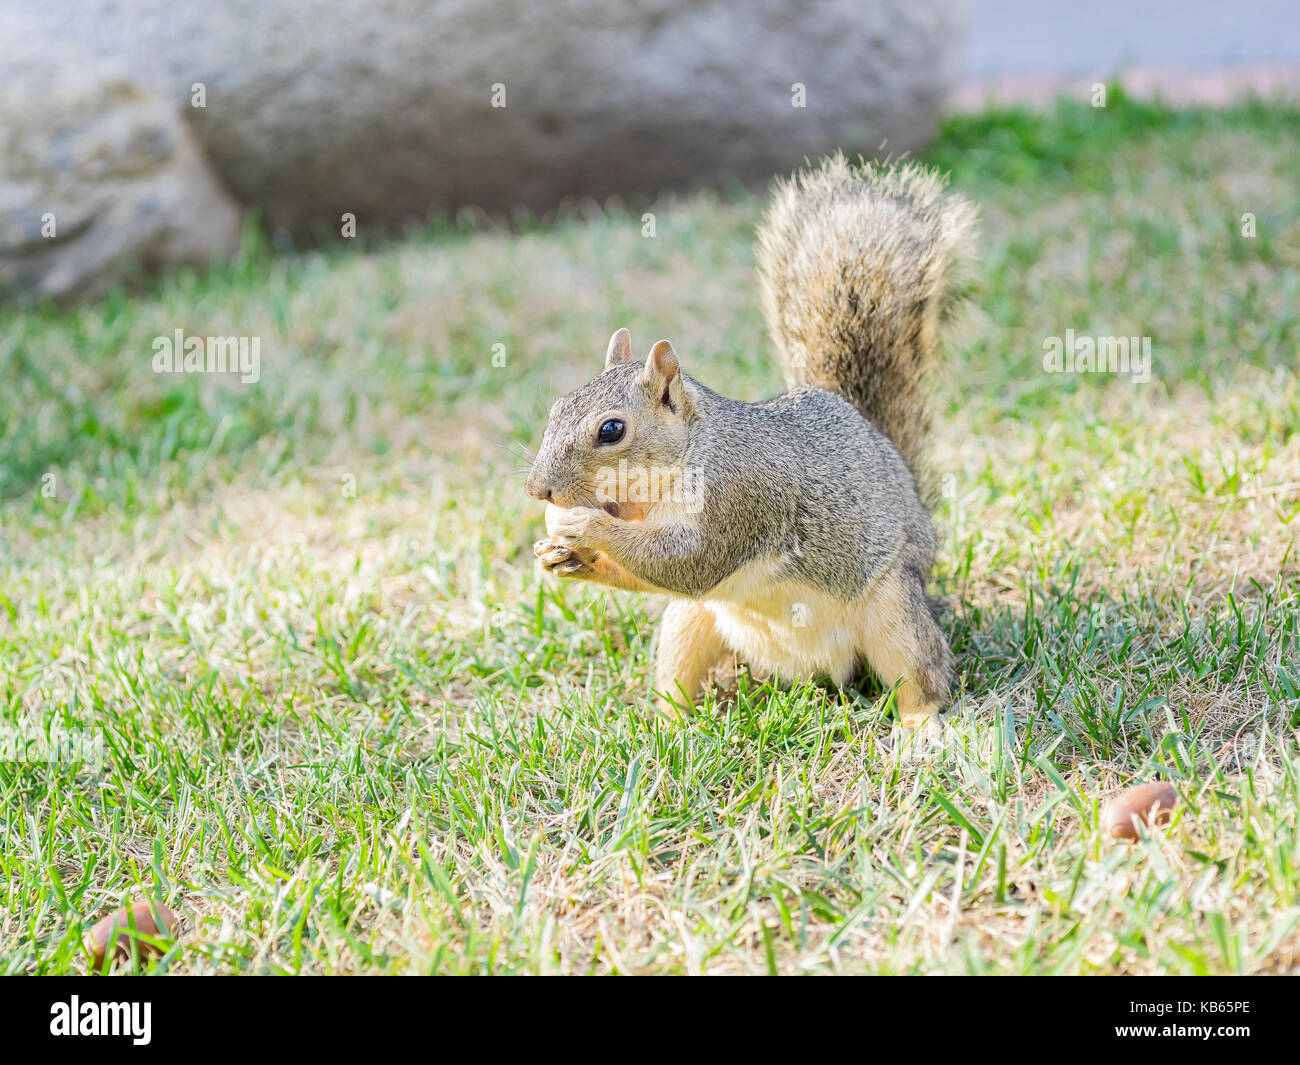 Carino piccolo scoiattolo mangiare il dado Foto Stock